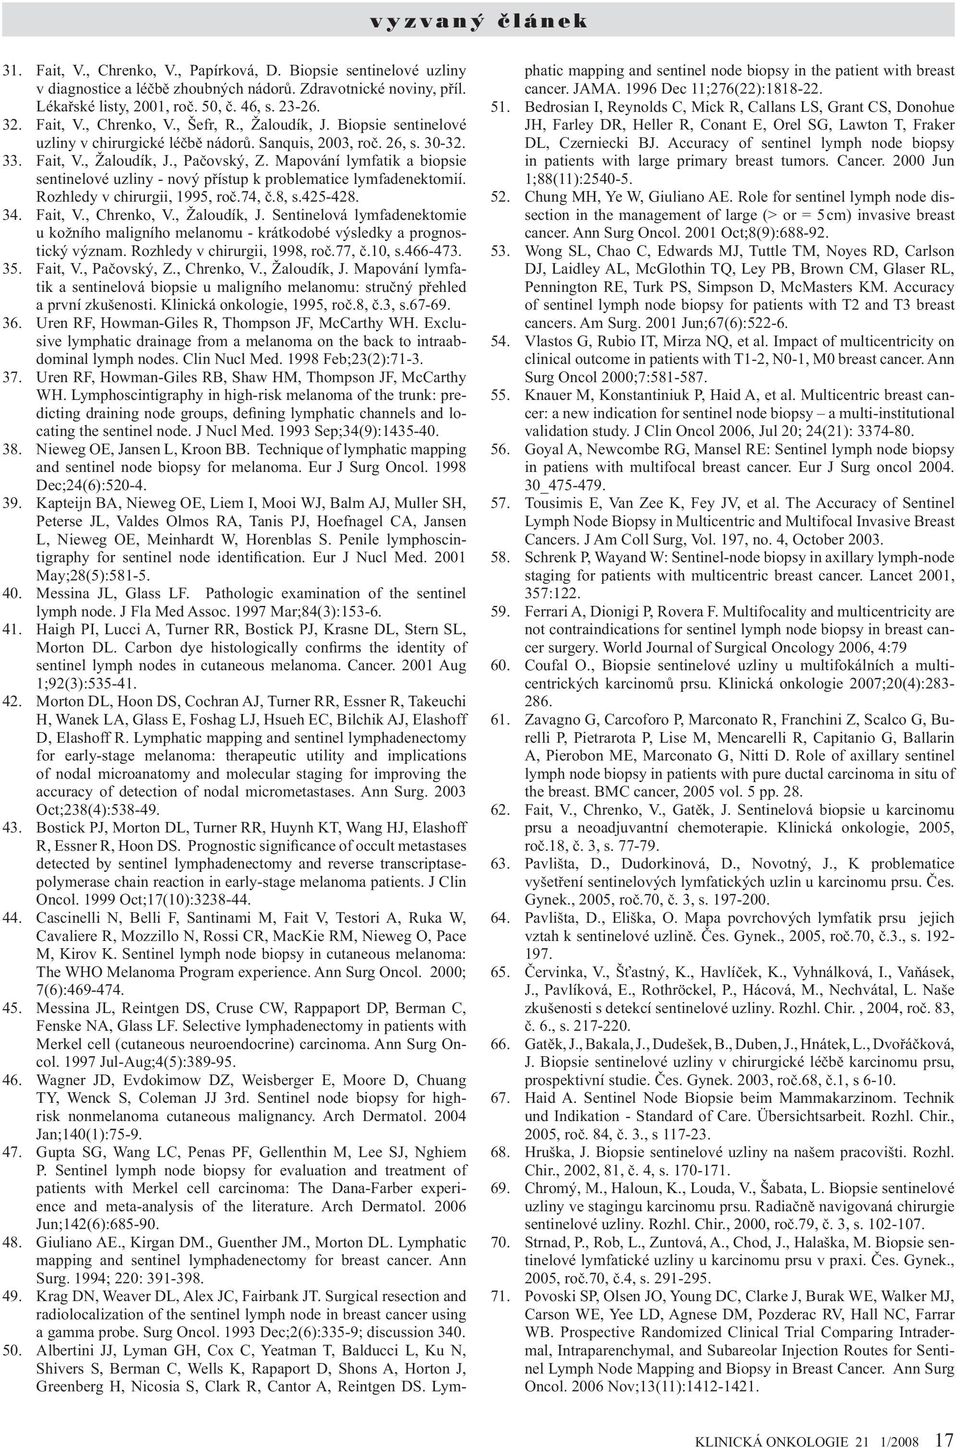 26, s. 30-32. Fait, V., Žaloudík, J., Pačovský, Z. Mapování lymfatik a biopsie sentinelové uzliny - nový přístup k problematice lymfadenektomií. Rozhledy v chirurgii, 1995, roč.74, č.8, s.425-428.